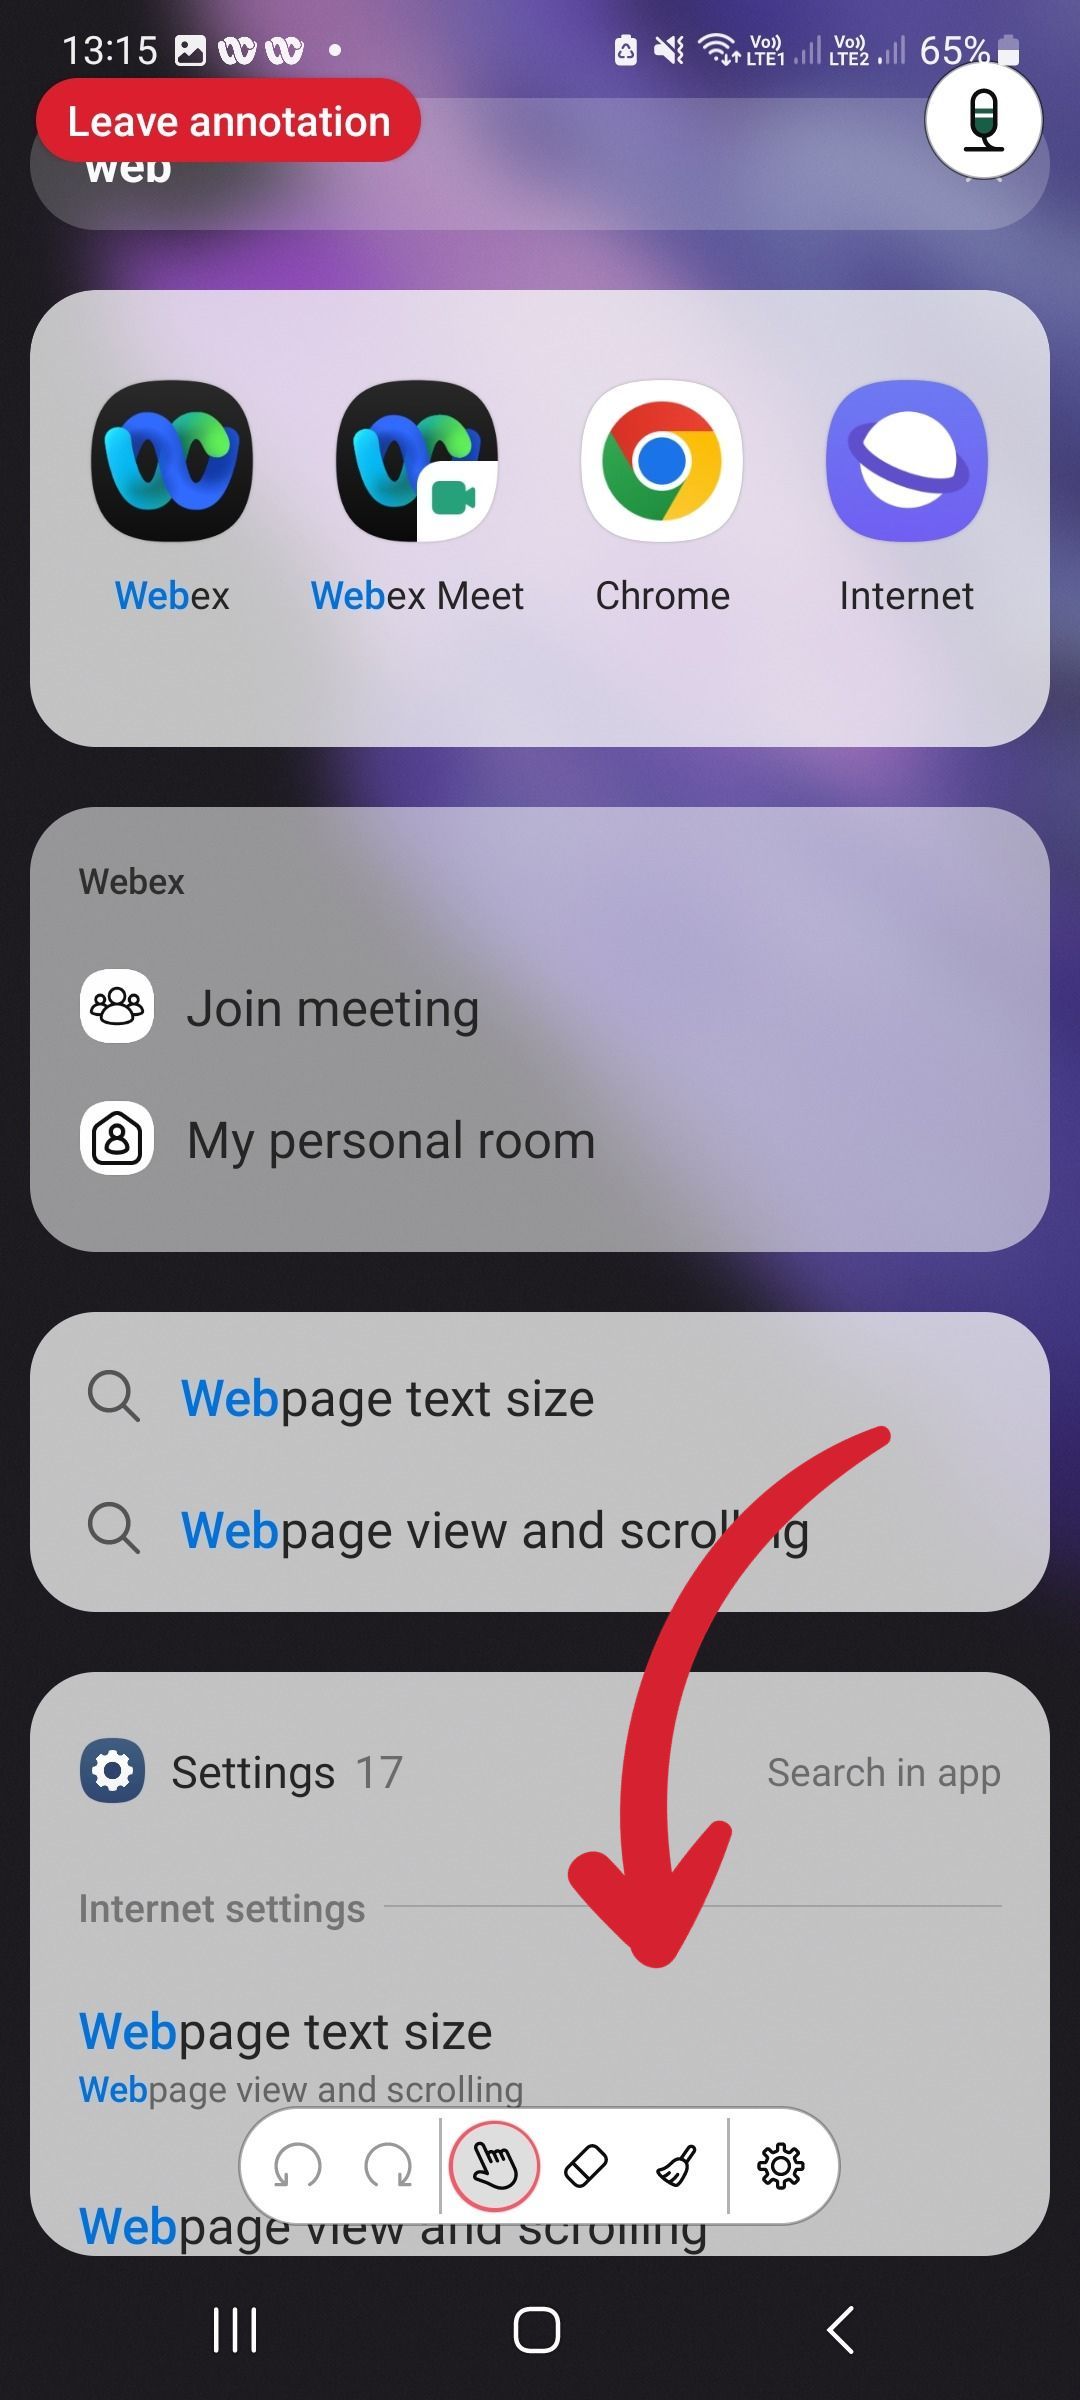 Captura de tela da barra de ferramentas de anotação do aplicativo móvel Webex